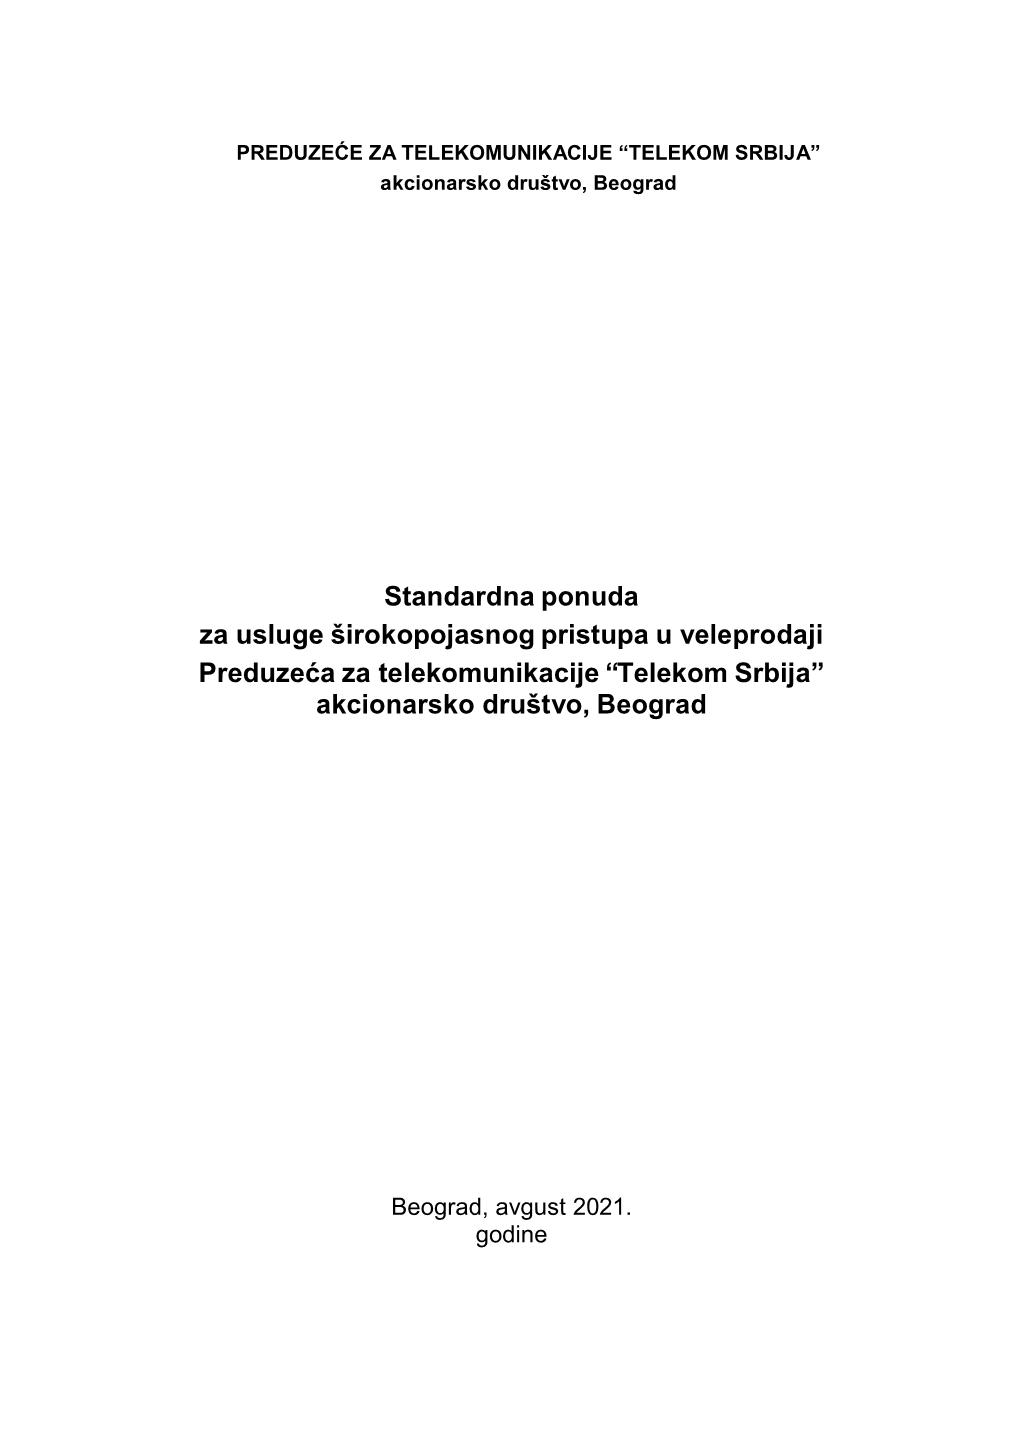 Standardna Ponuda Za Usluge Širokopojasnog Pristupa U Veleprodaji Preduzeća Za Telekomunikacije “Telekom Srbija” Akcionarsko Društvo, Beograd